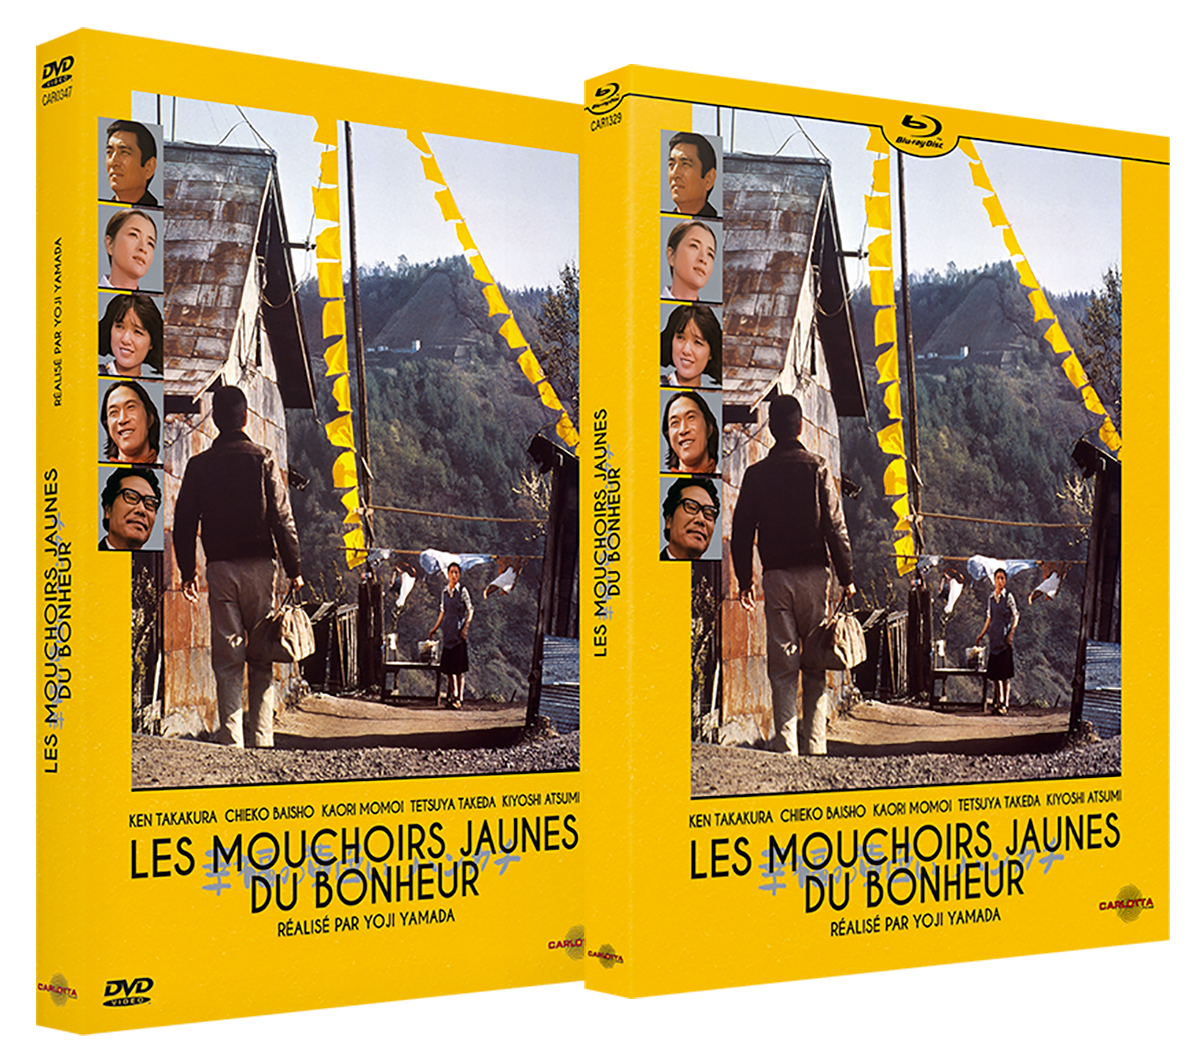 Les mouchoirs jaunes du bonheur de Yoji Yamada sort en DVD et Blu-ray Disc.